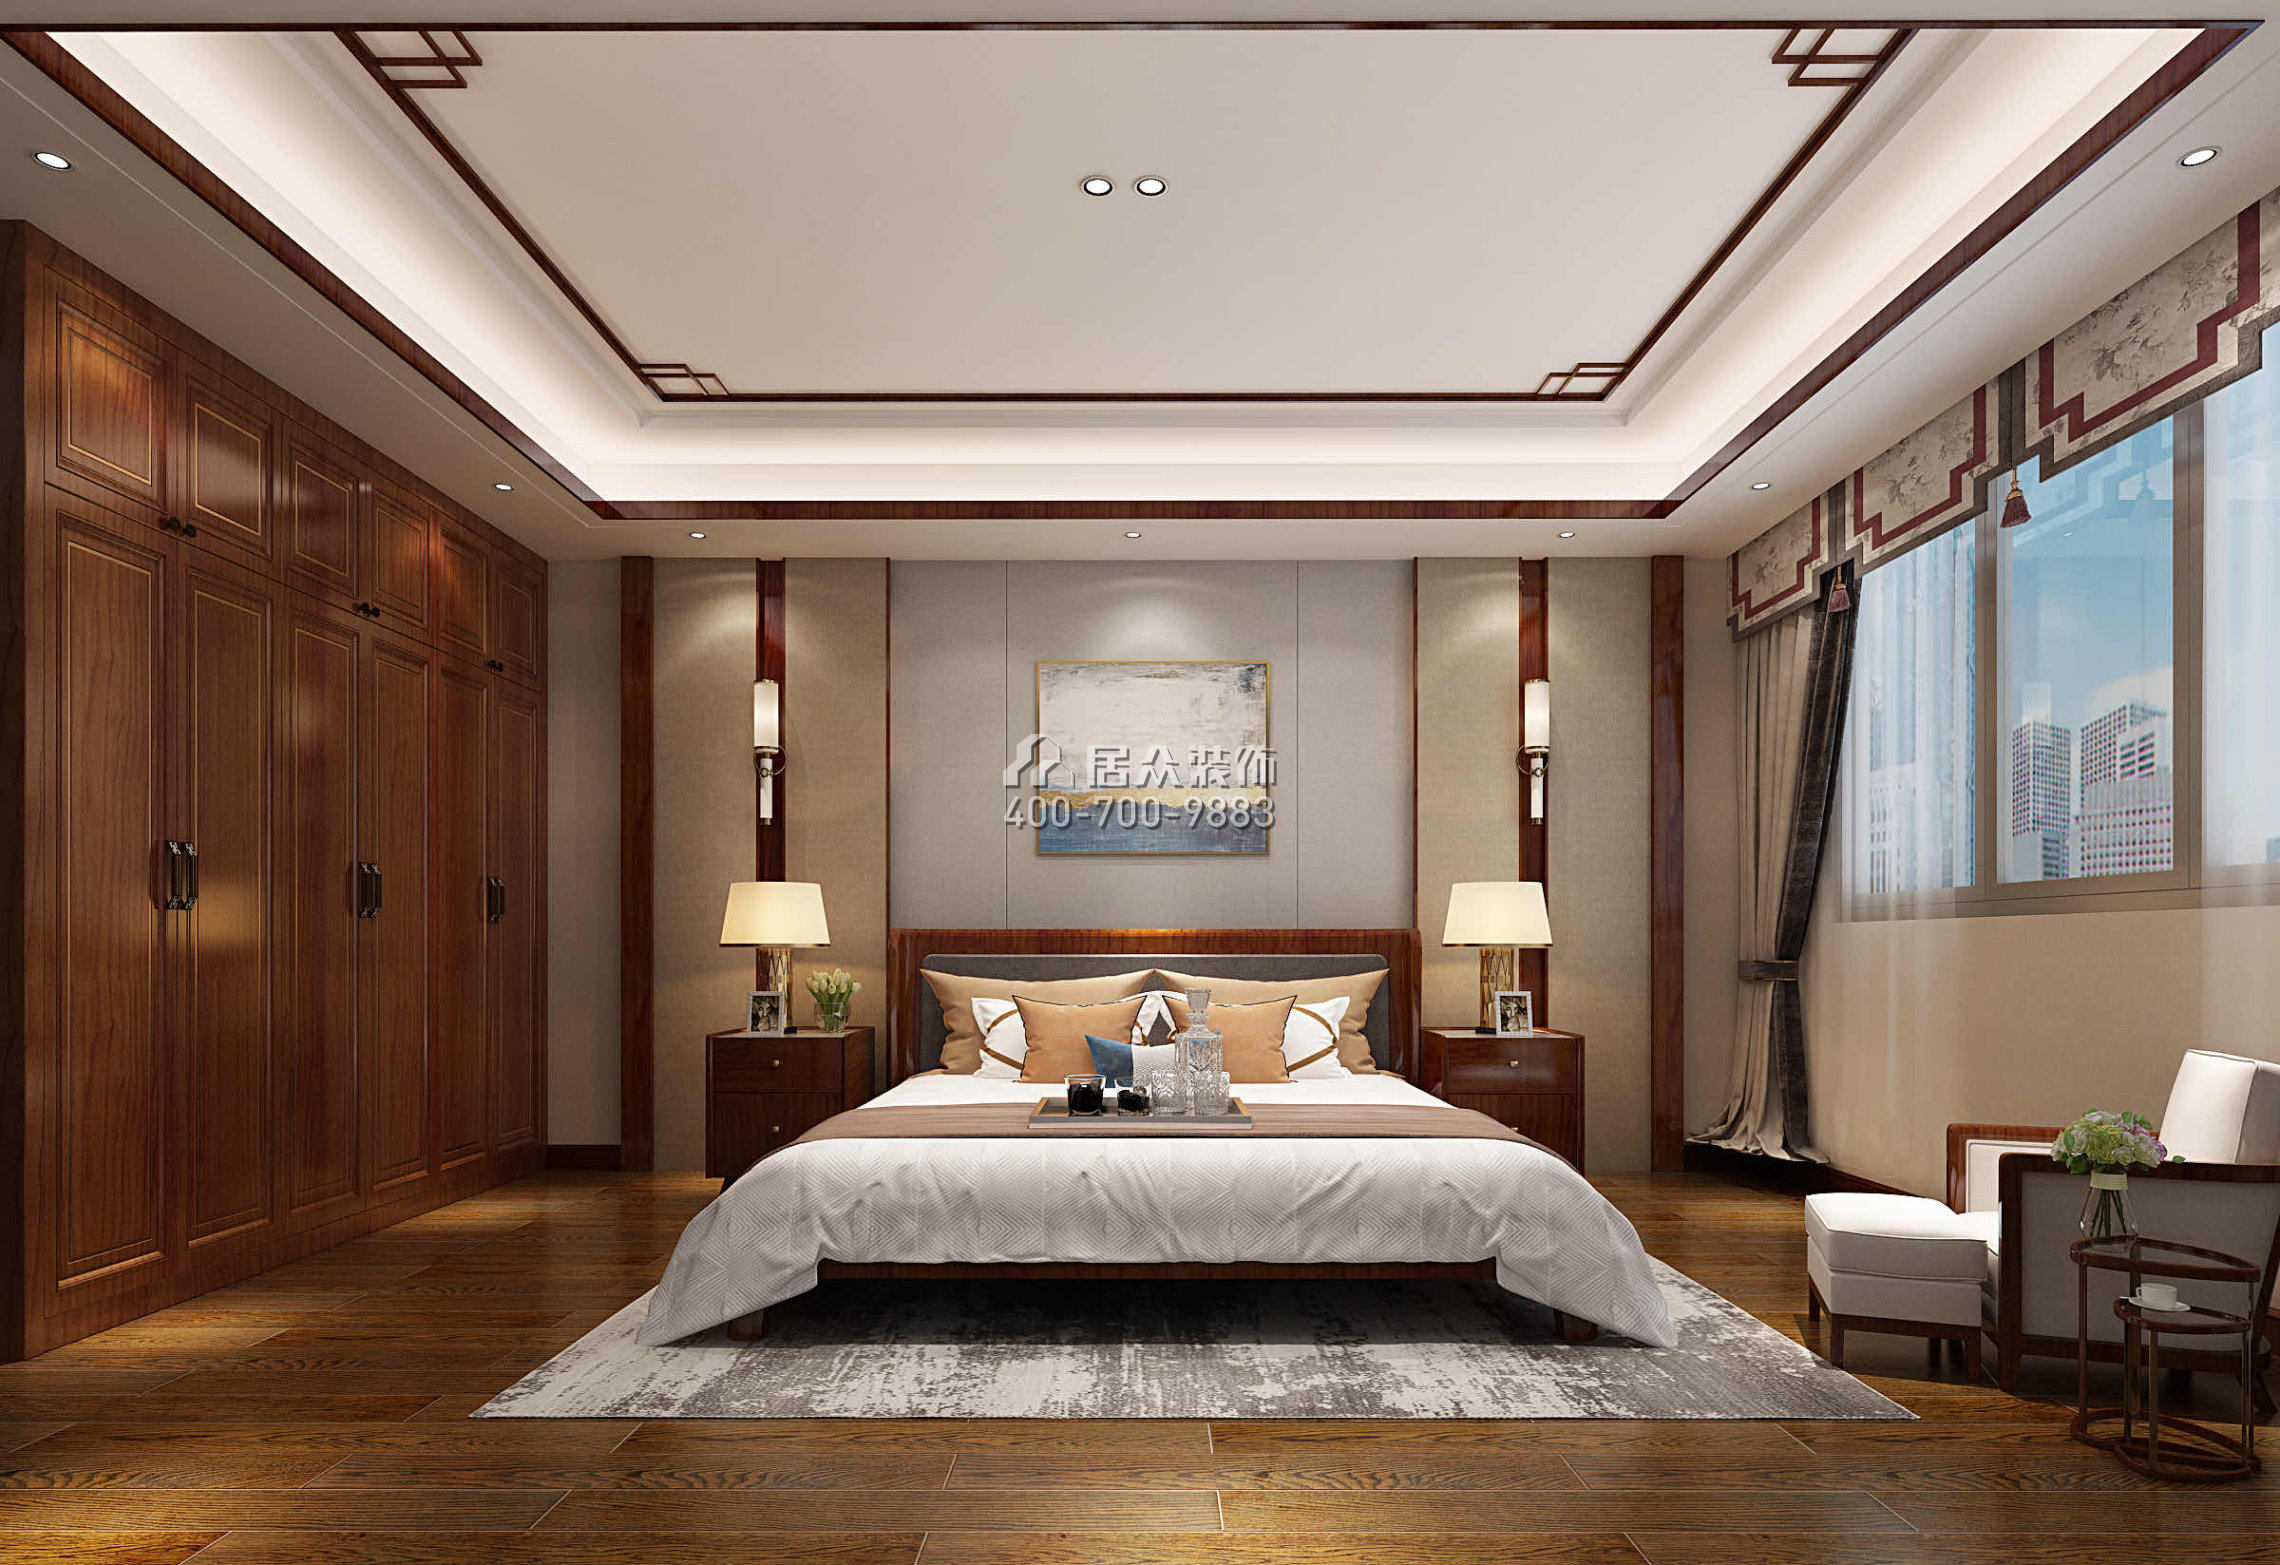 皇庭壹号公馆二期460平方米中式风格别墅户型卧室装修效果图